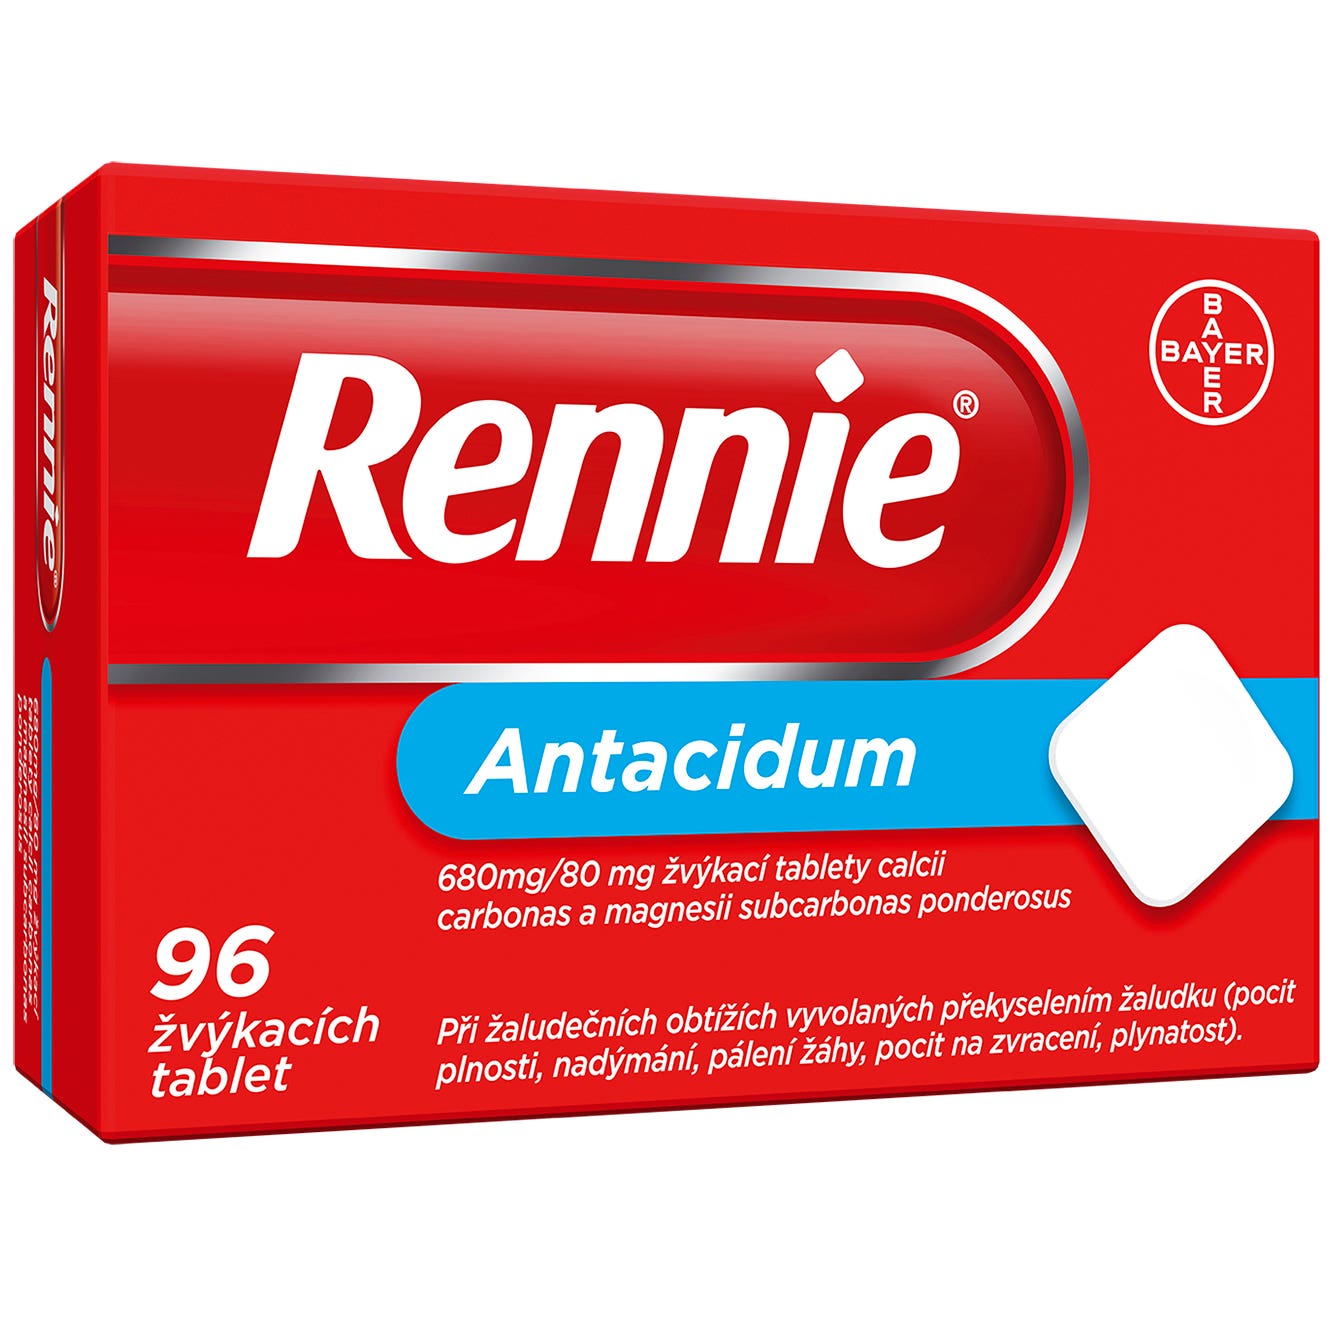 Rennie 96 tablet